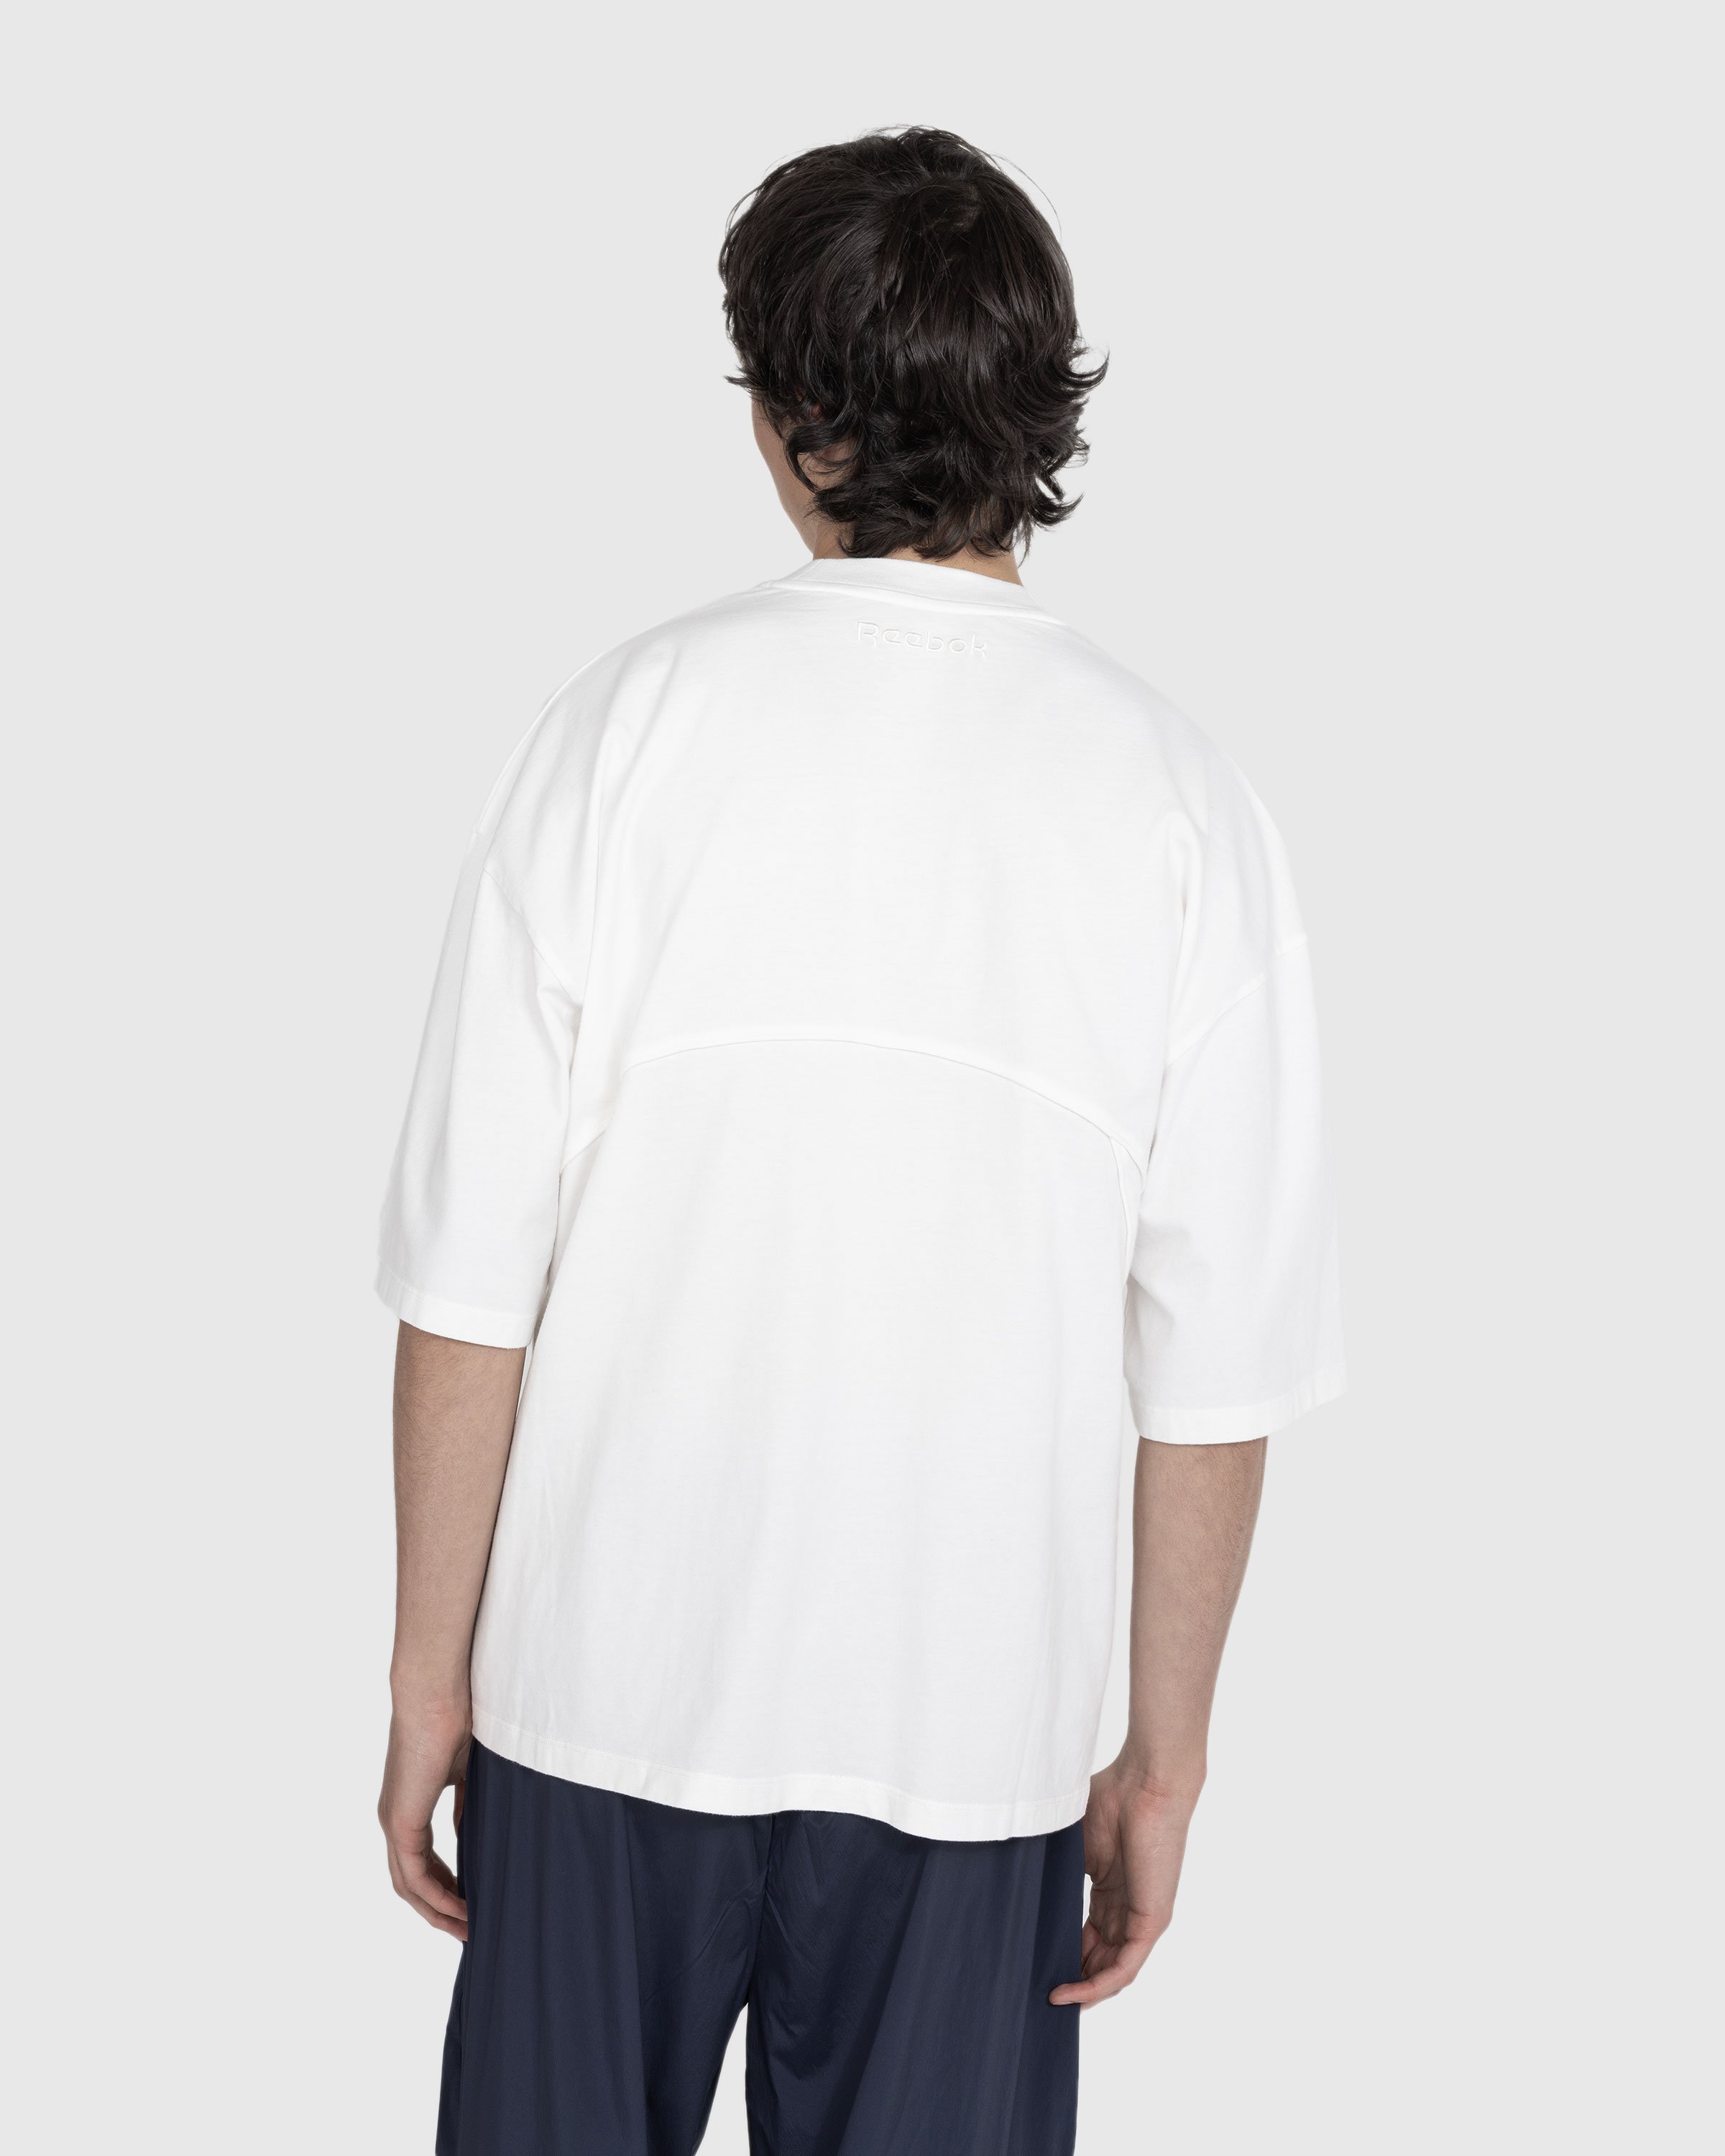 Reebok - Piped T-Shirt Bones - Clothing - White - Image 3